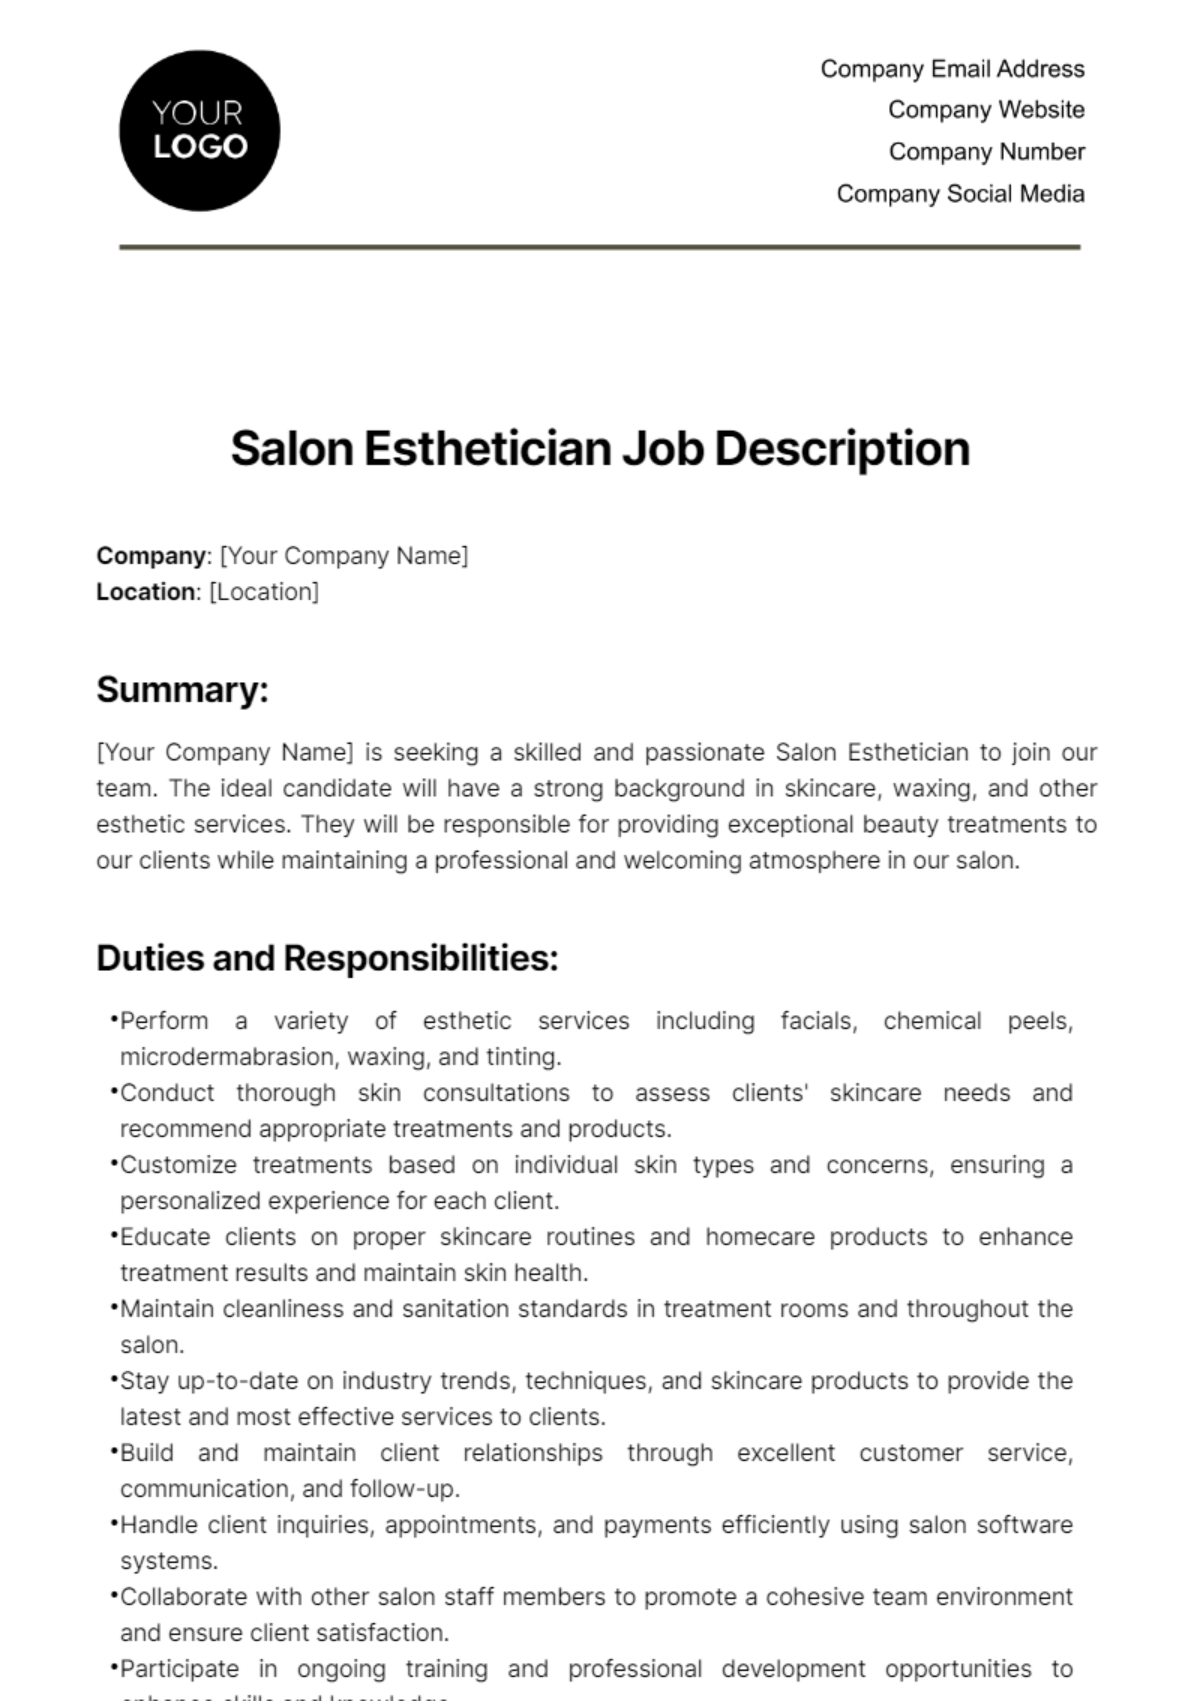 Salon Esthetician Job Description Template